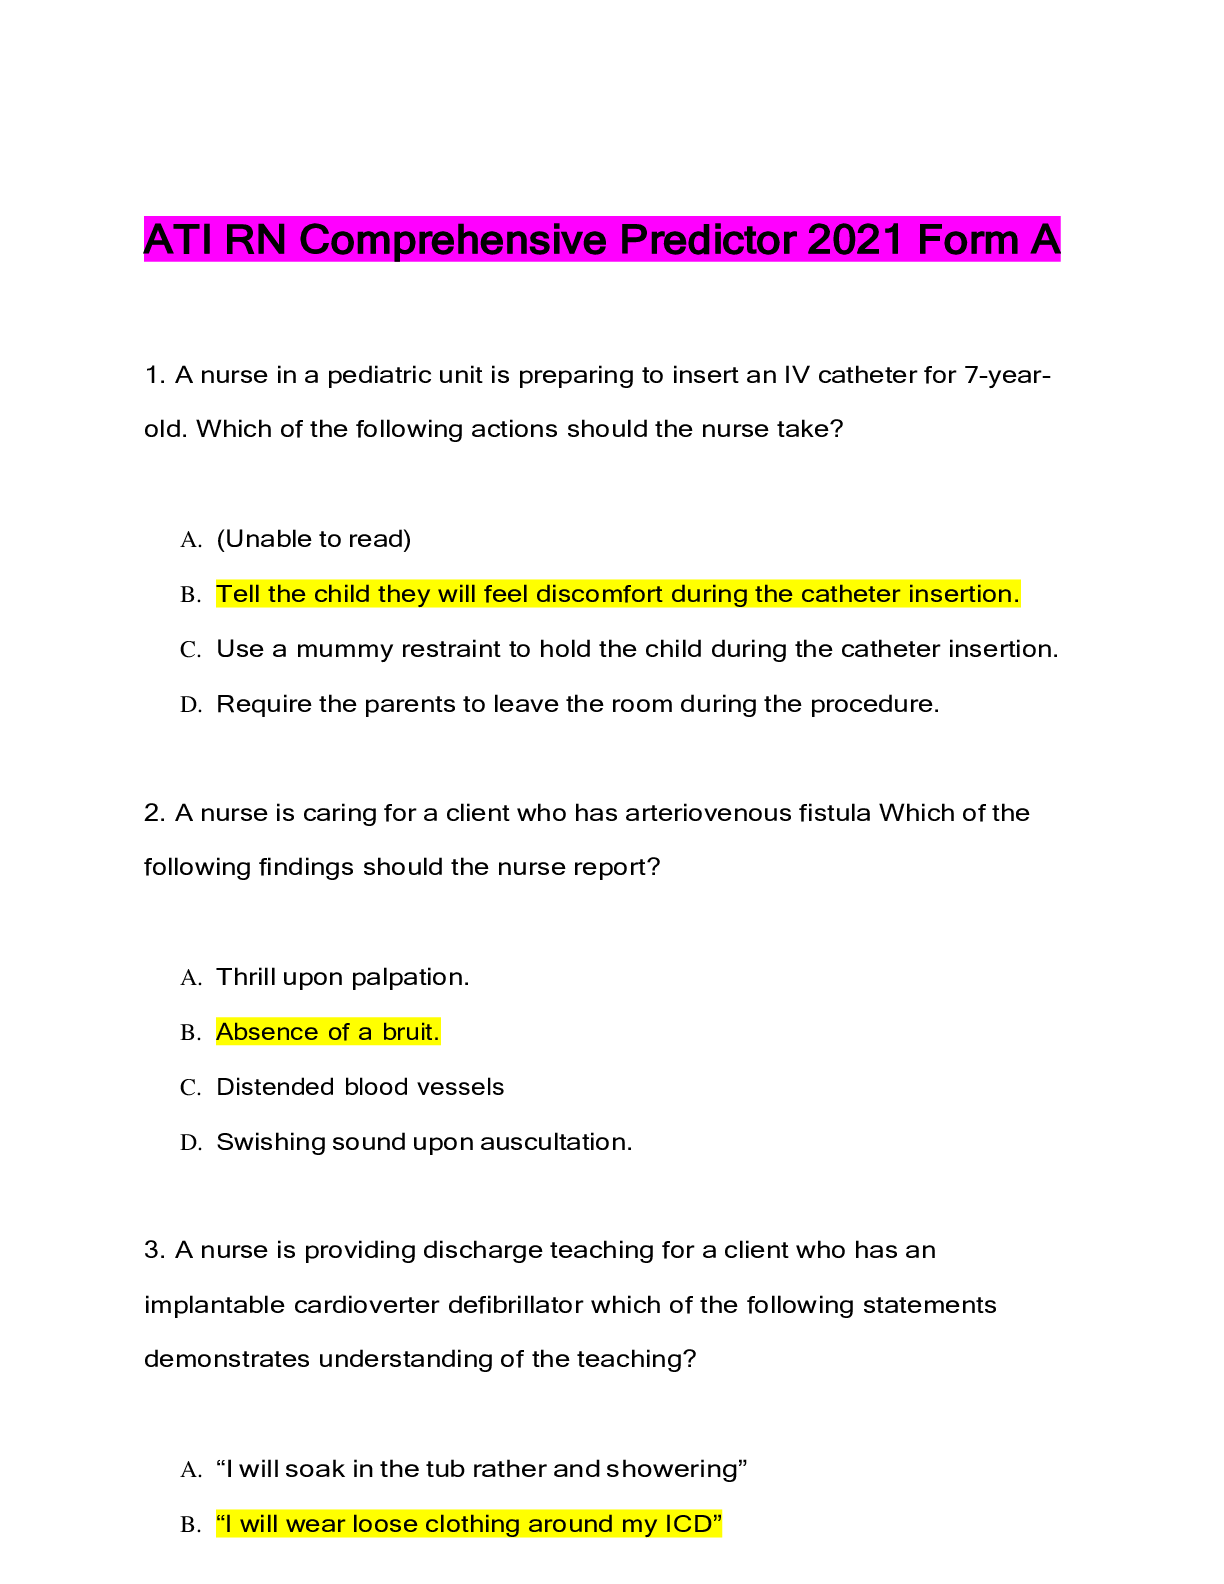 ATI RN Comprehensive Predictor 2021 Exam Guide